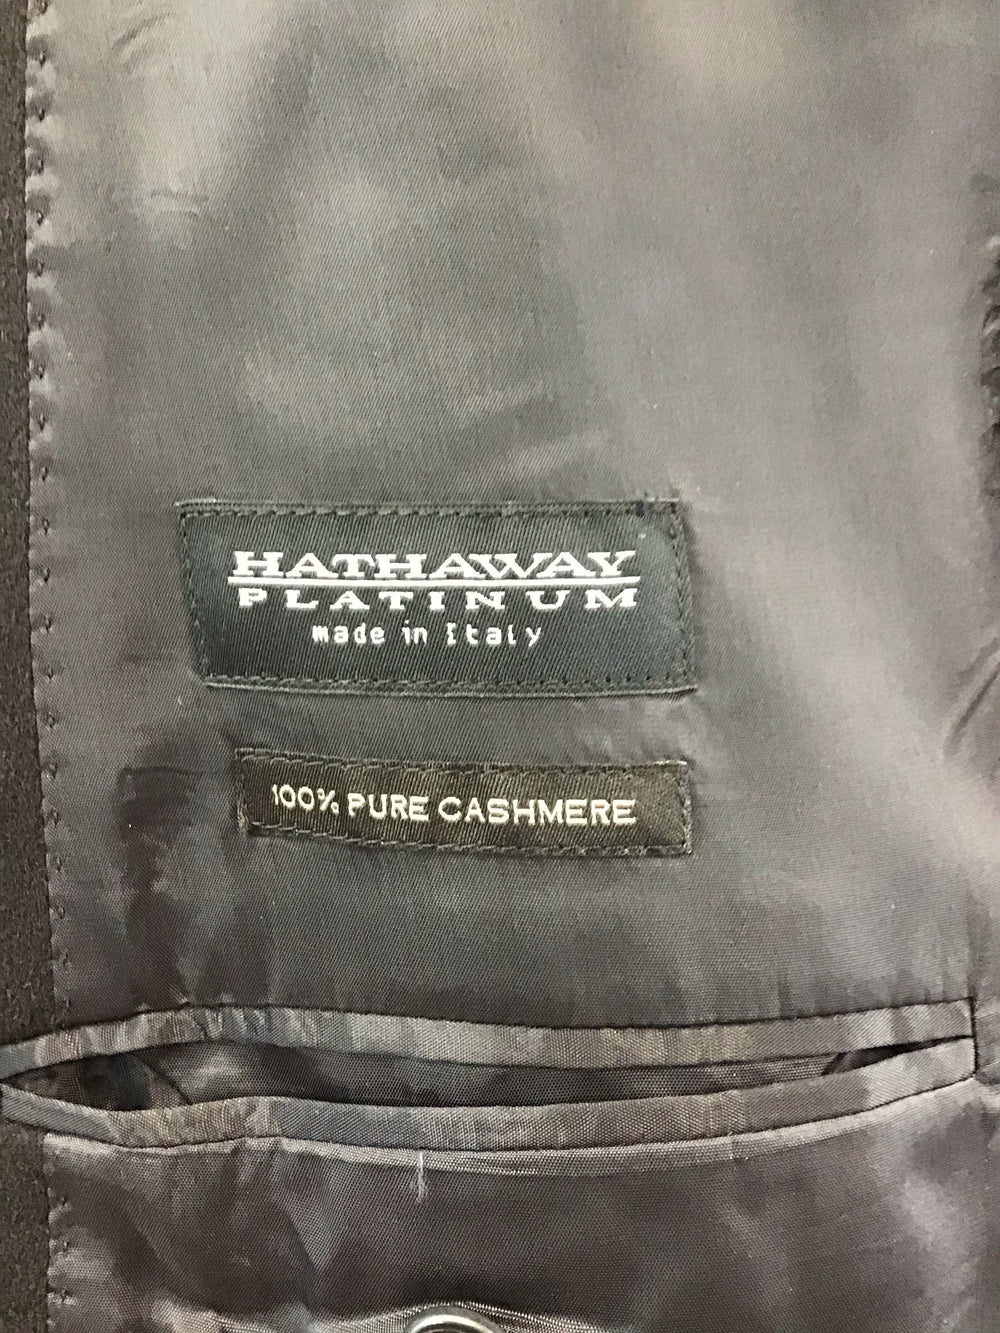 Men’s Black Hathaway Platinum Top Coat - Size XL